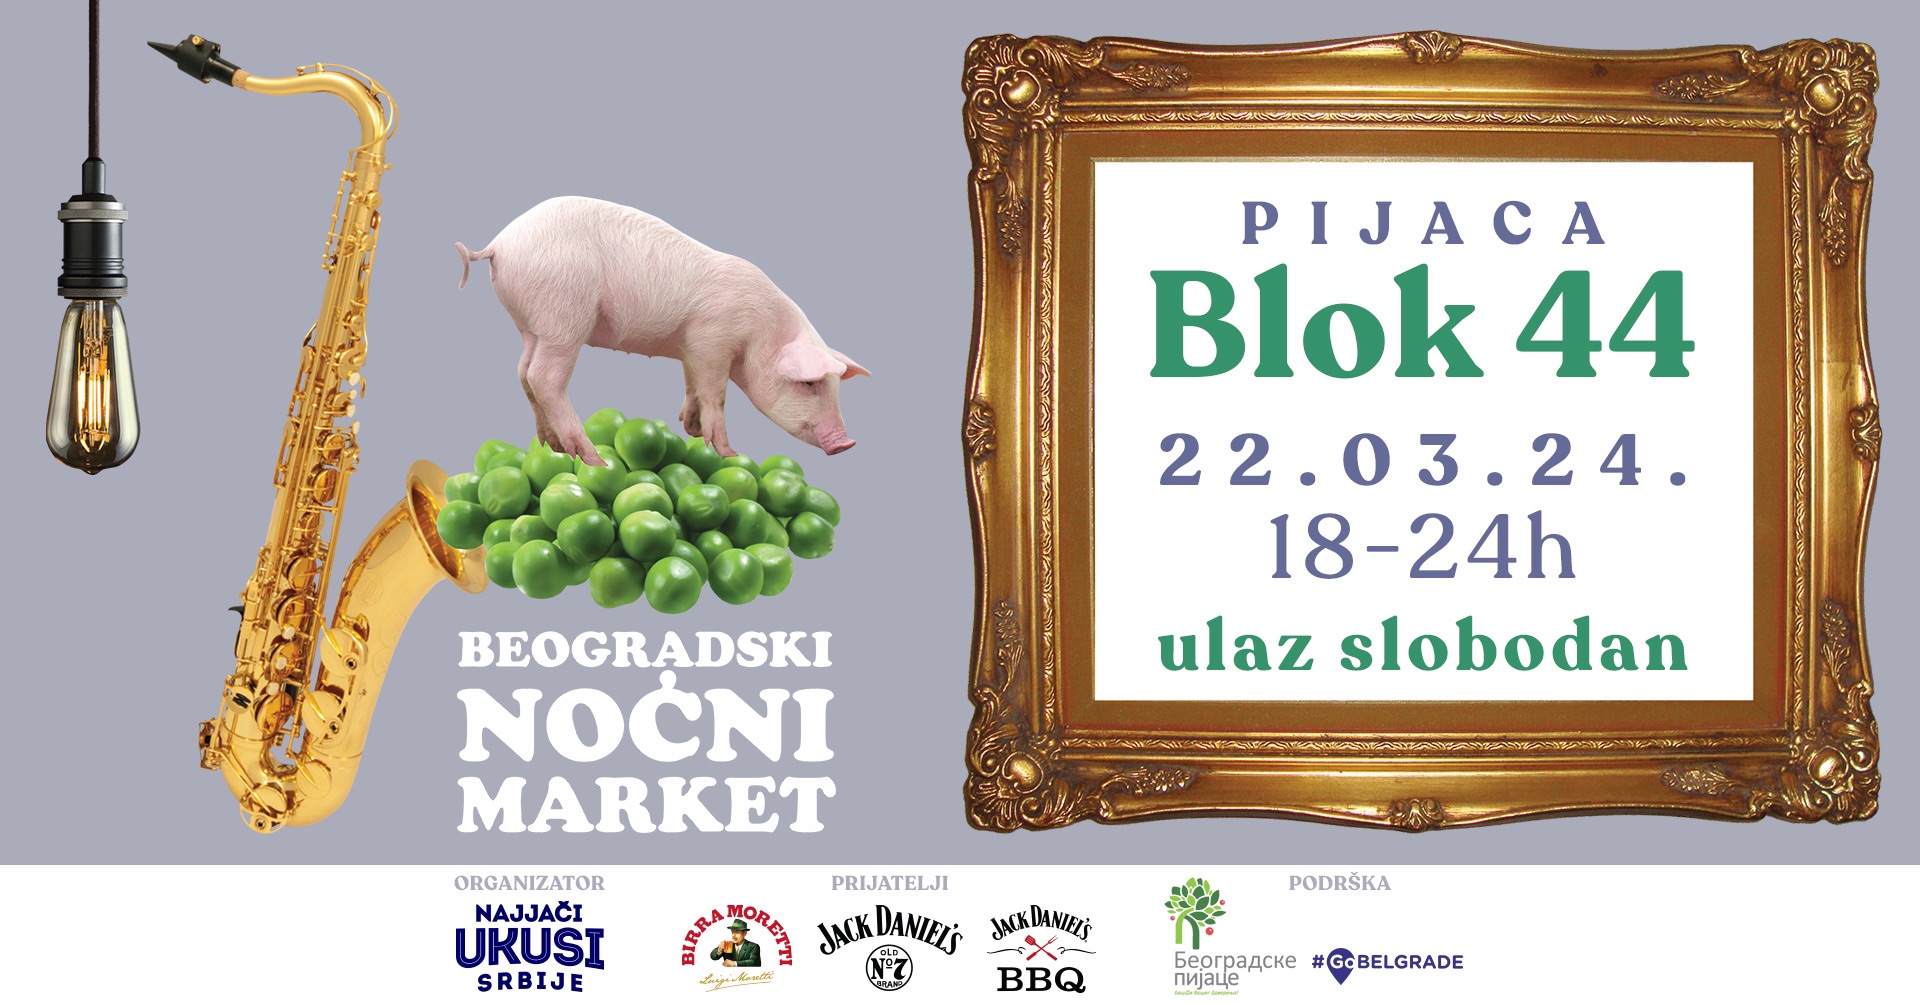 Beogradskih Noćnih Marketa 22.03.2024.Blok 44